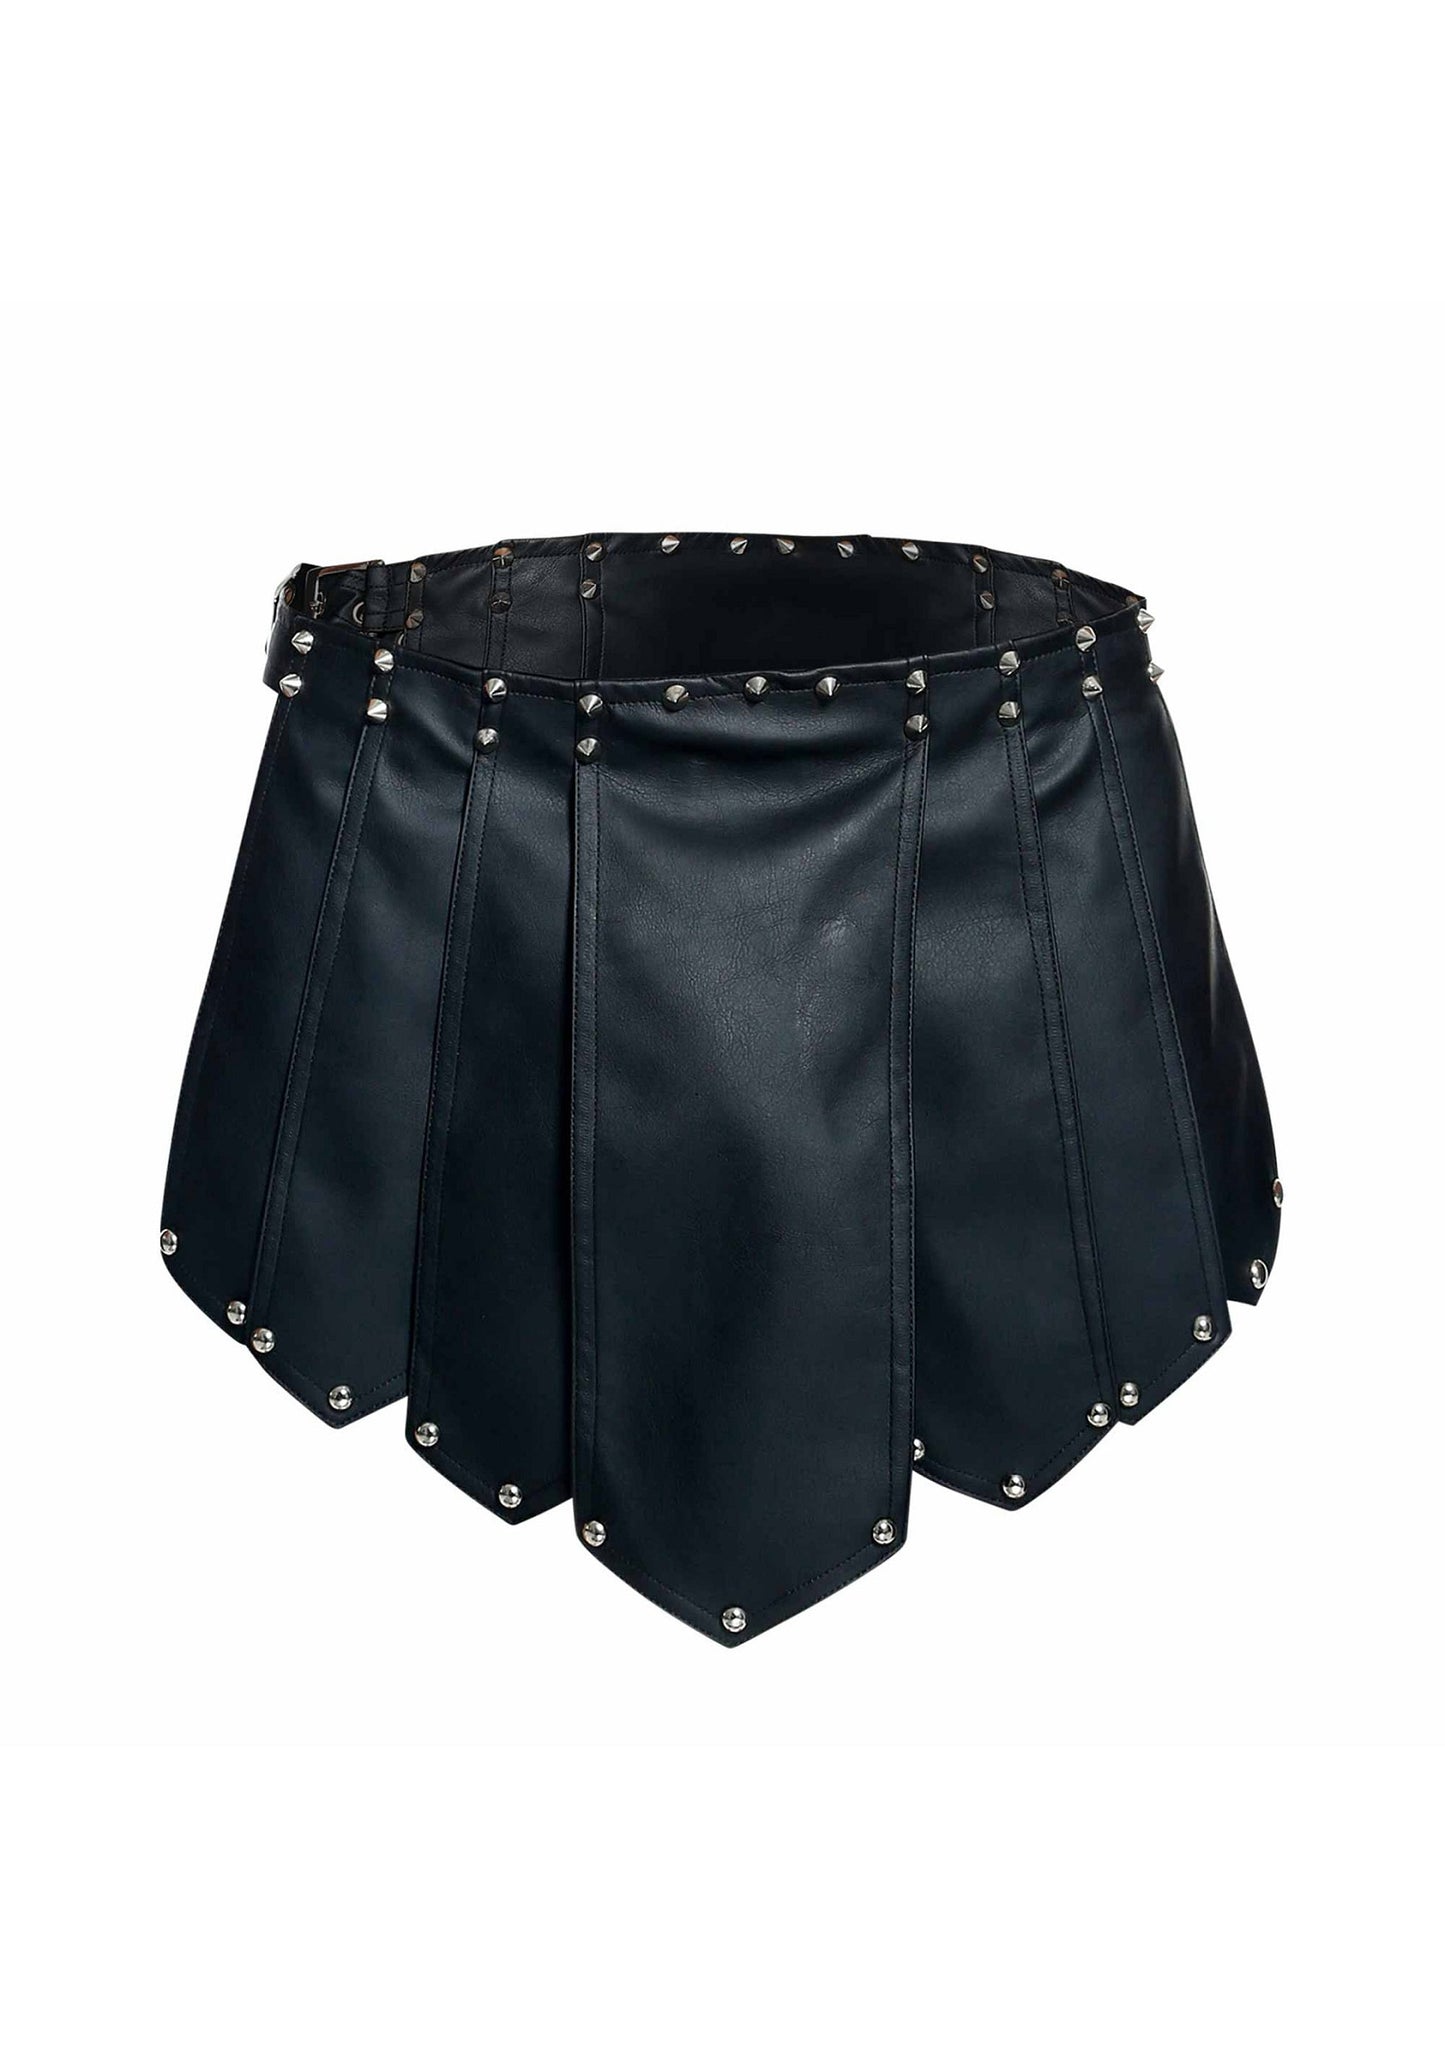 MOB Eroticwear Dngeon Roman Skirt BLACK O/S - 5